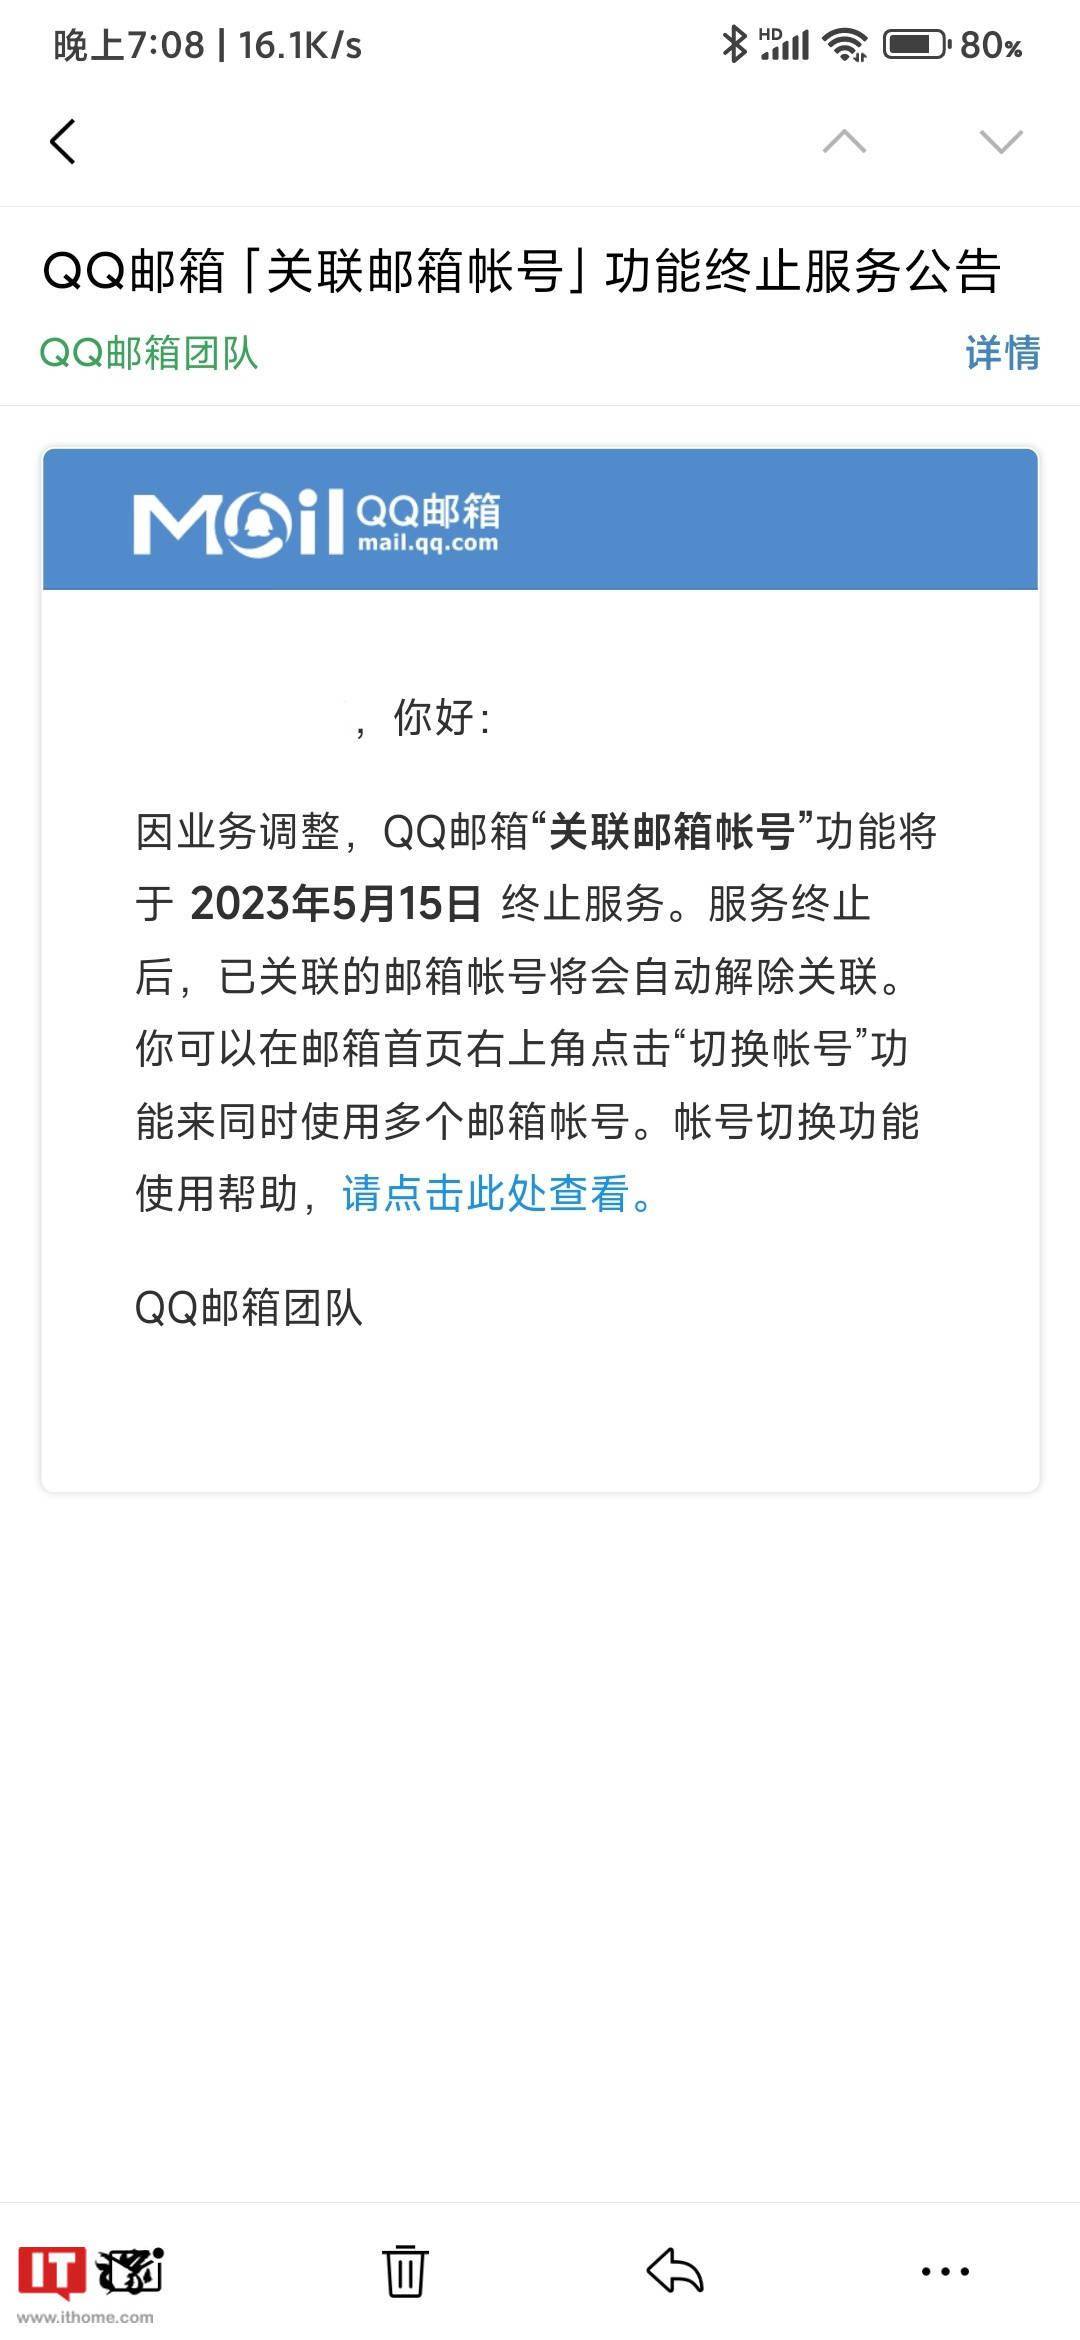 qq登录网页手机版:腾讯 QQ 邮箱宣布“关联邮箱帐号”功能 2023 年 5 月 15 日下线-第2张图片-太平洋在线下载